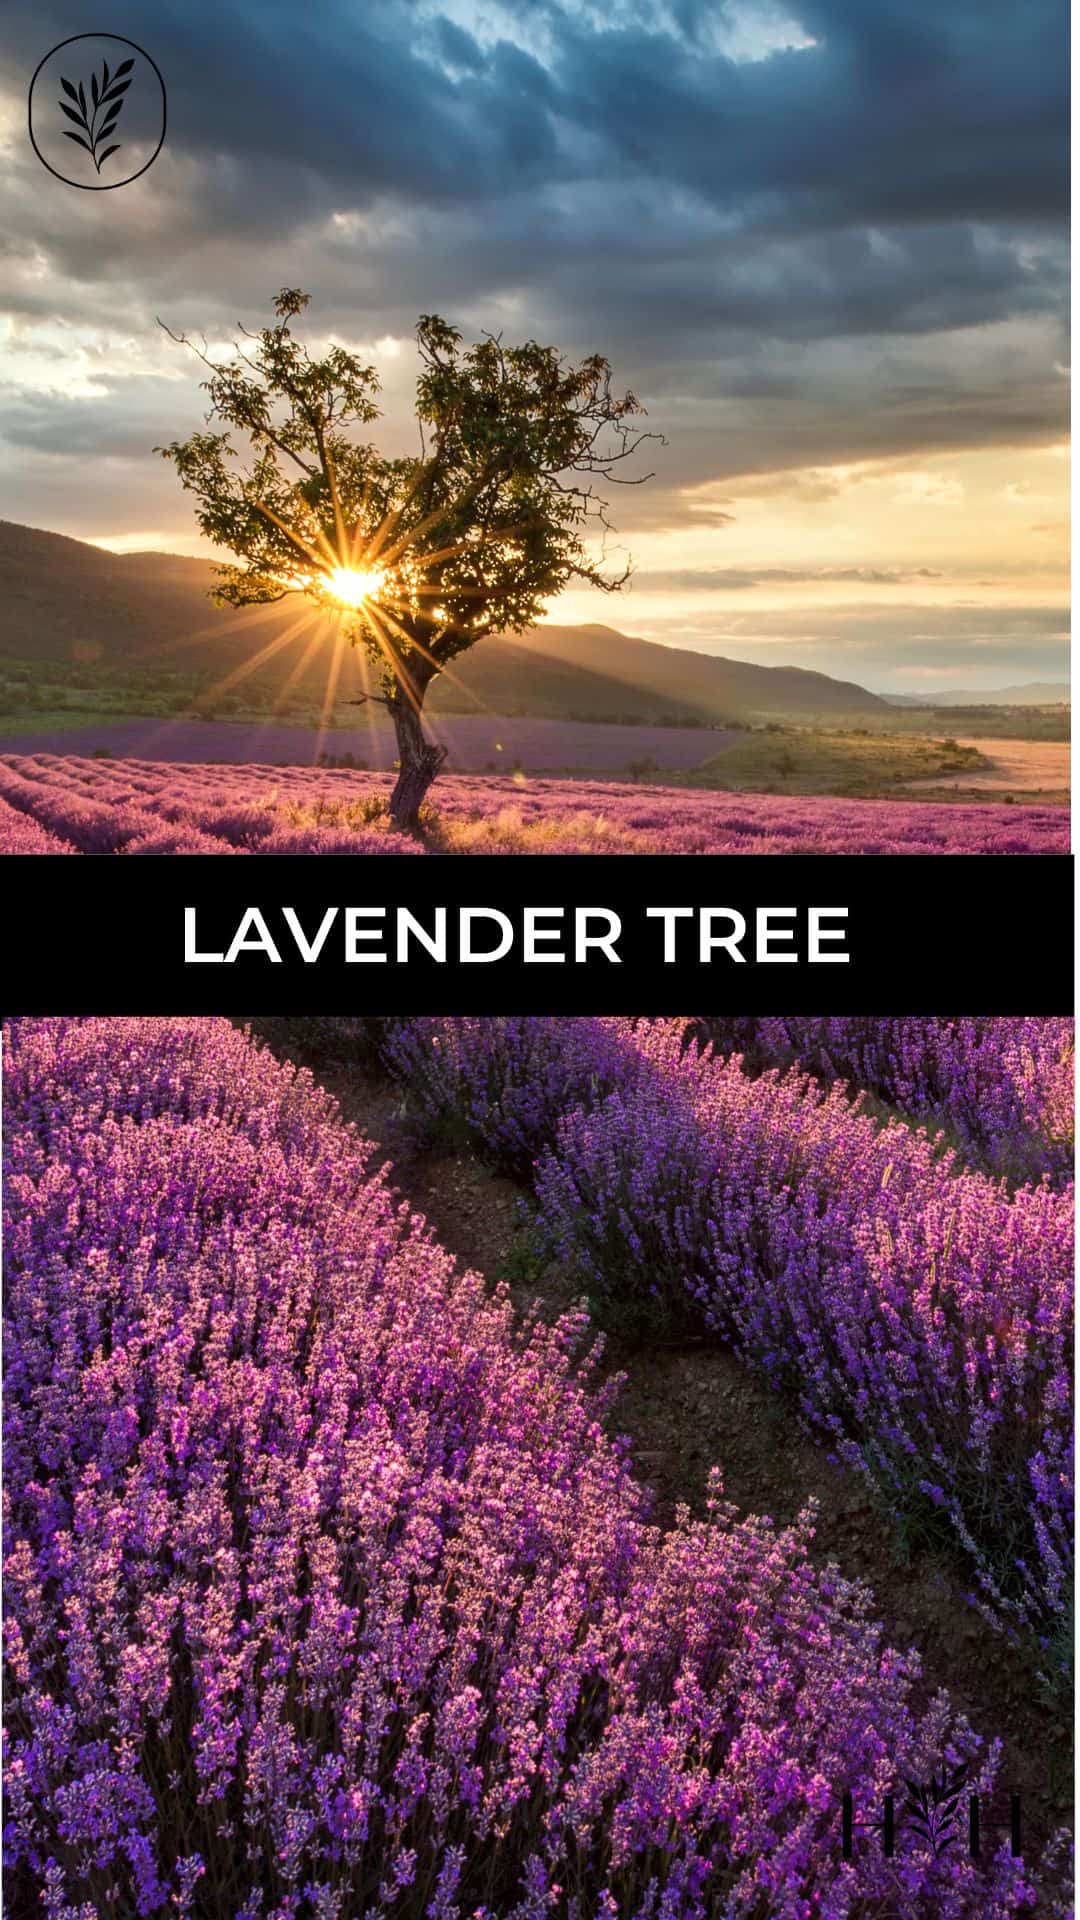 Lavender tree via @home4theharvest